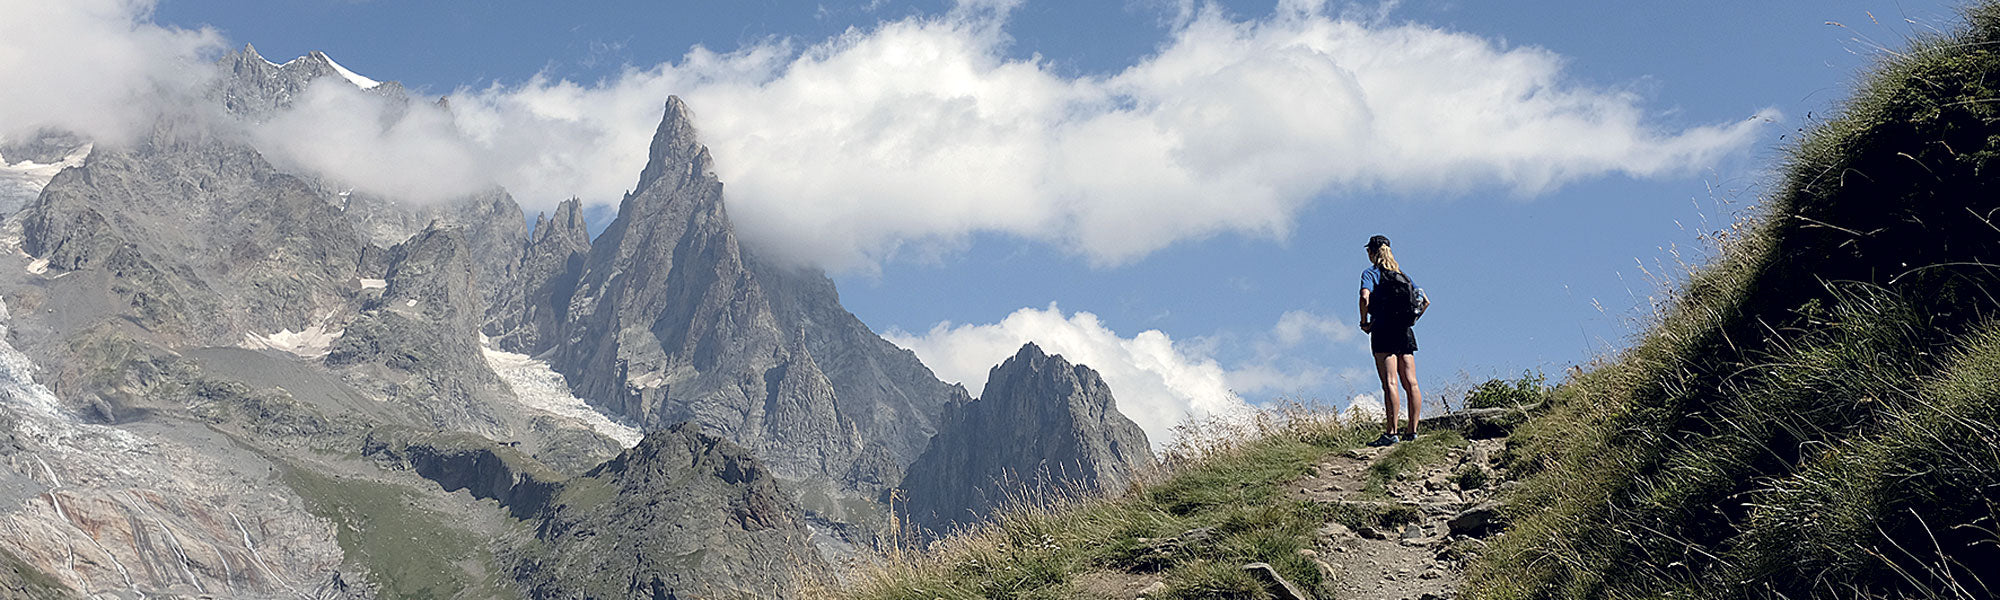 The Aiguille Noire de Peuterey as seen on the Tour du Mont Blanc in the Alps